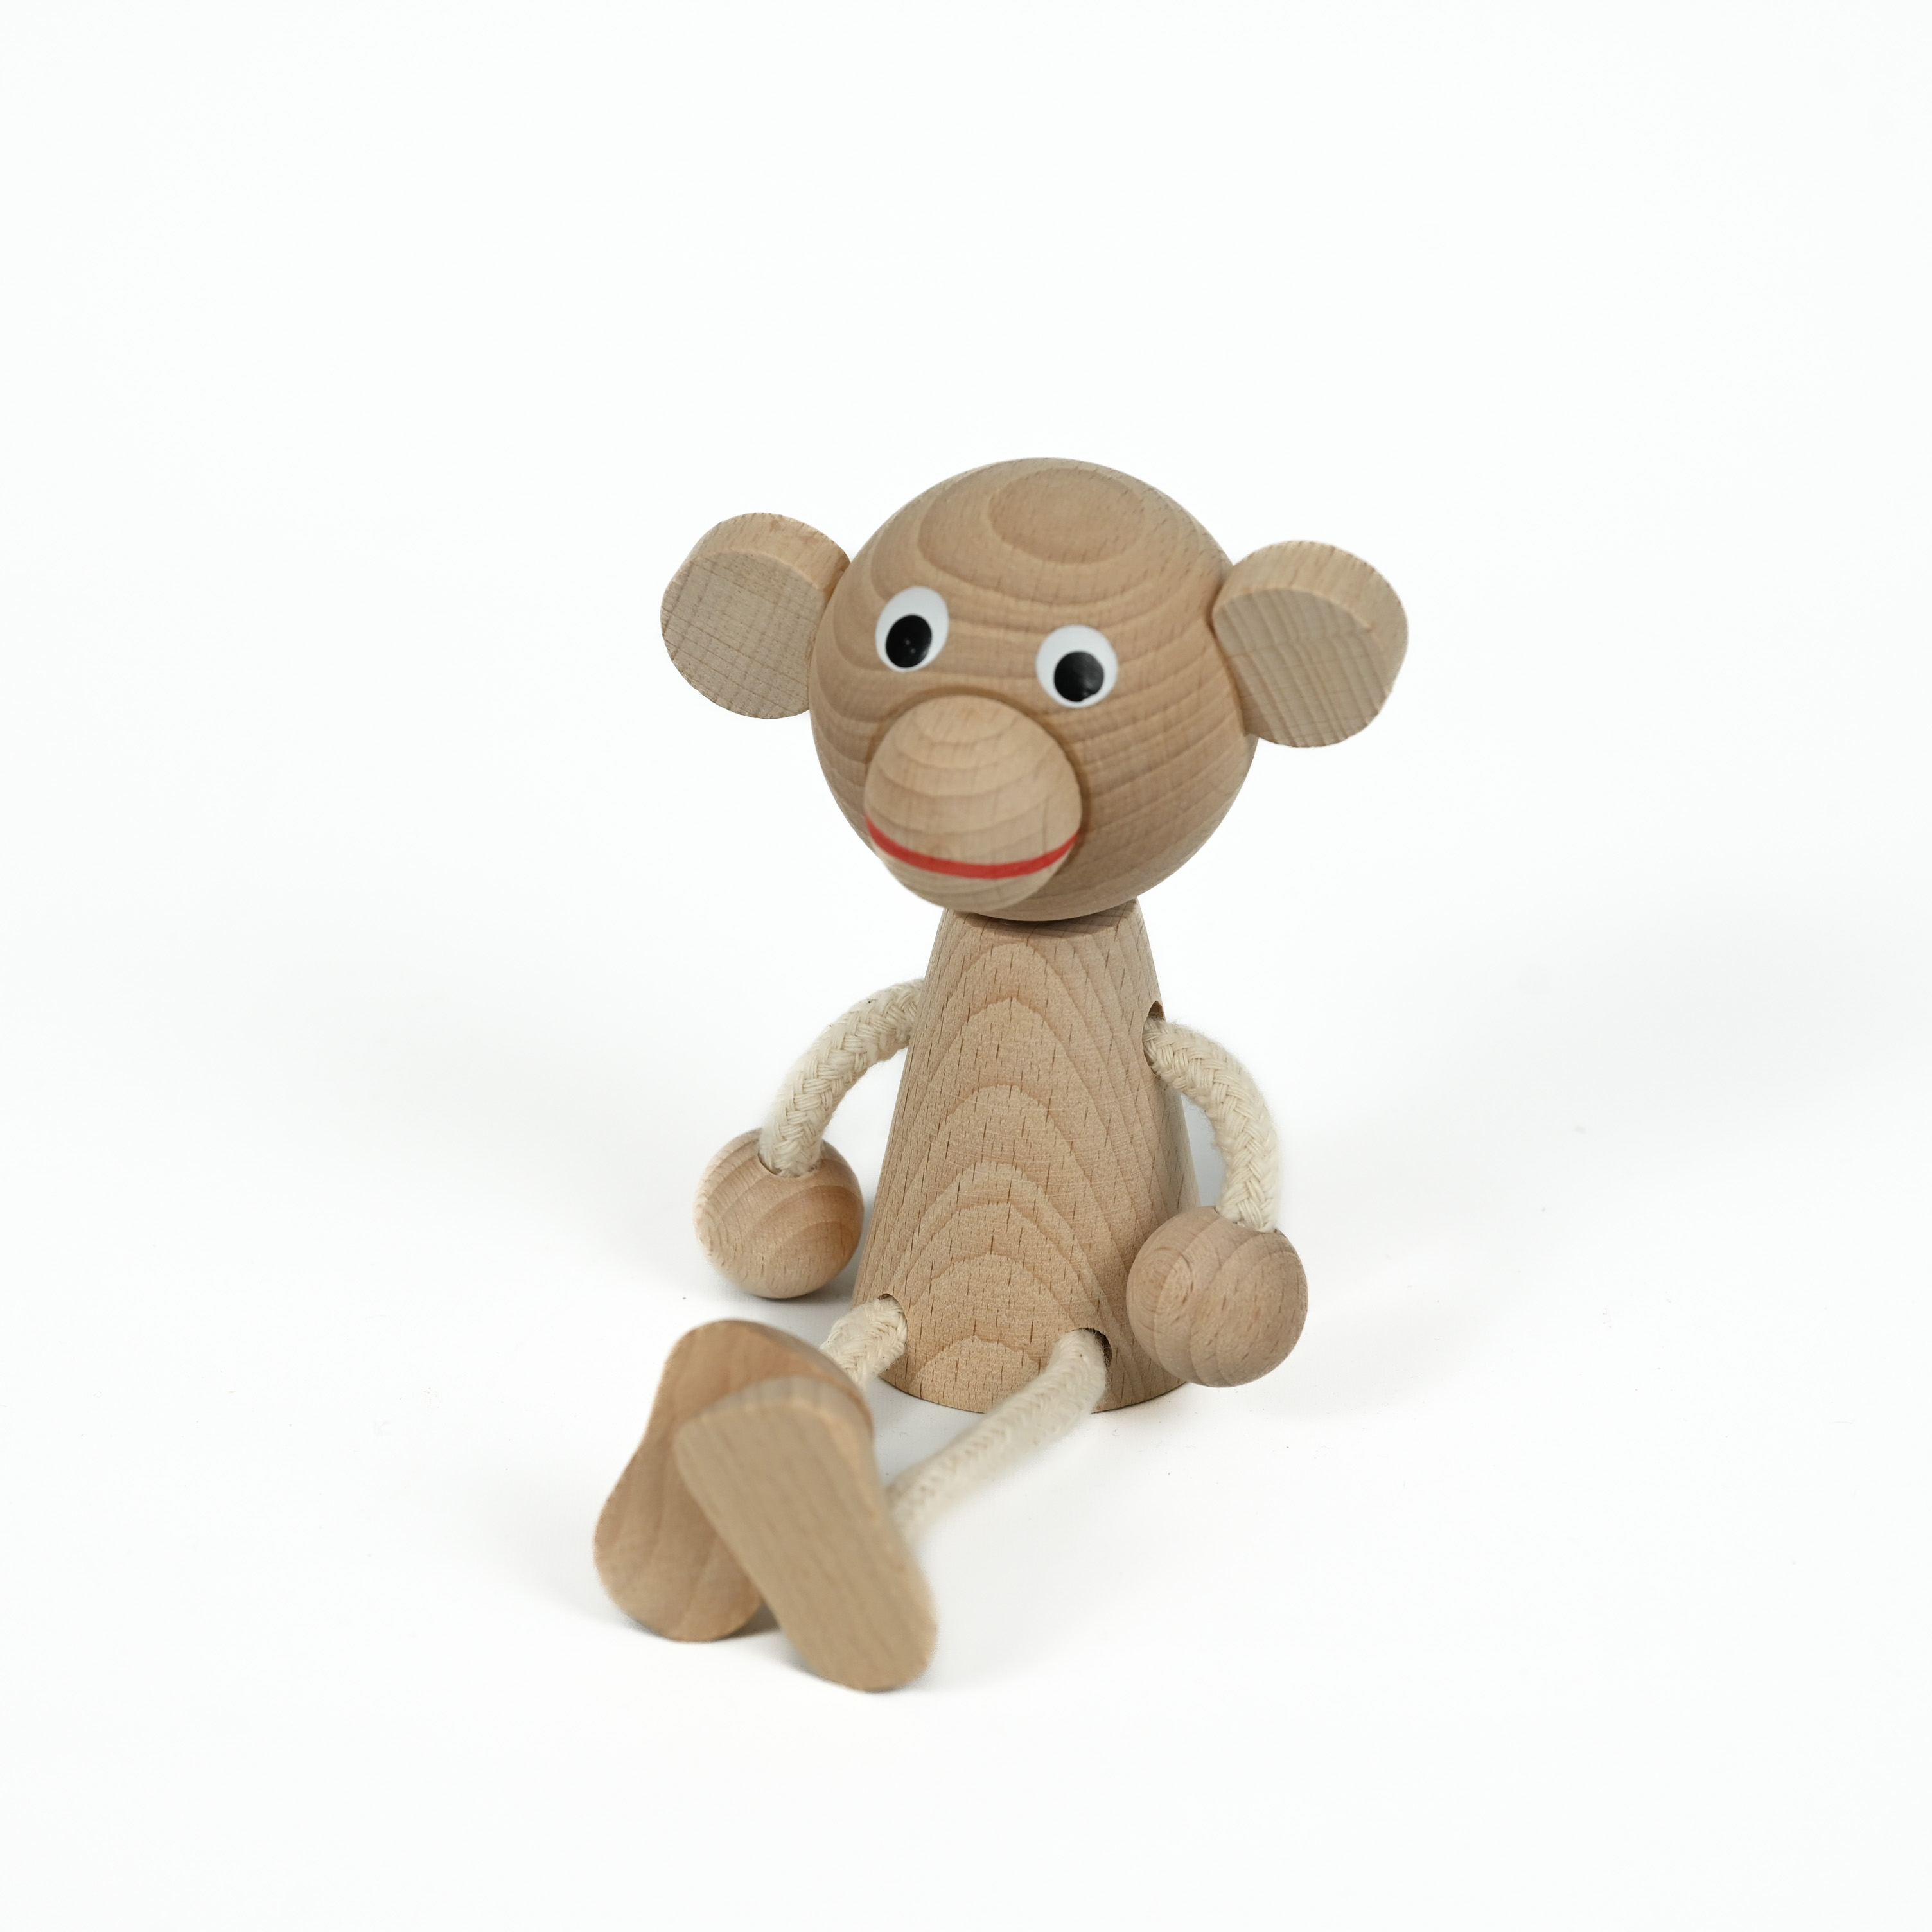 Wooden Sitting Toy / Monkey